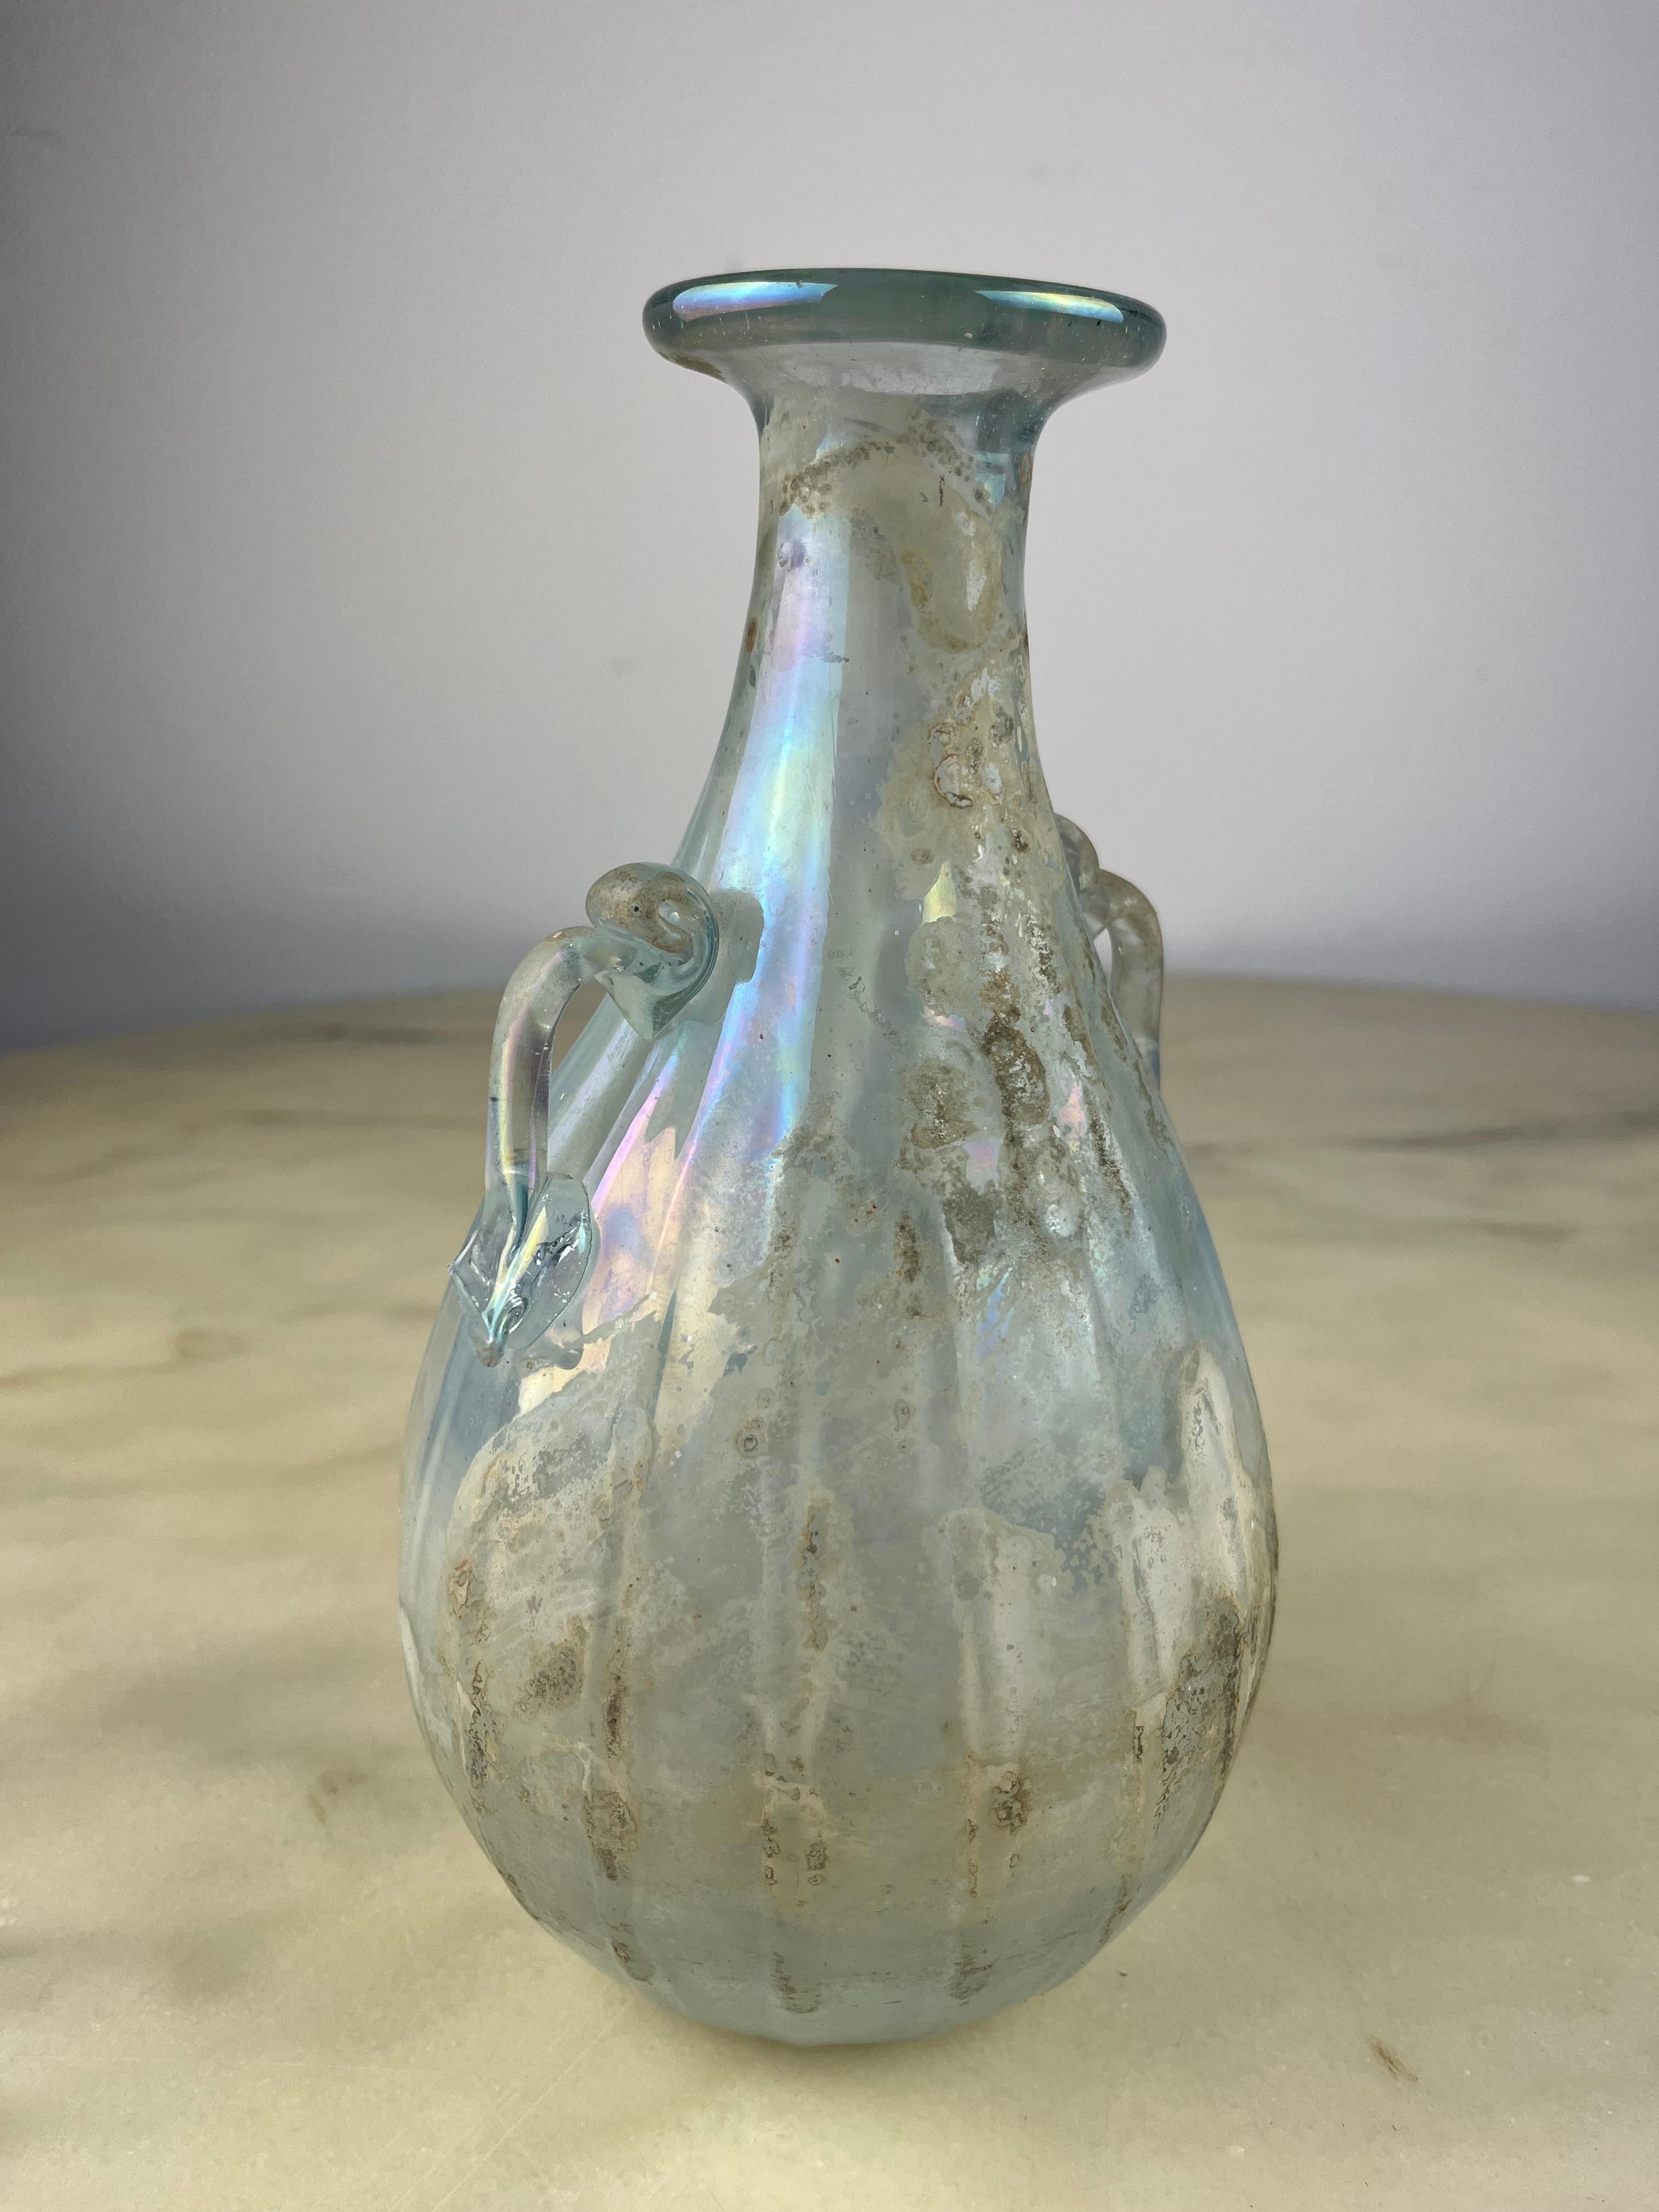 Amphora aus opalisierendem Murano-Glas, zugeschrieben Archimede Seguso, Italien, 1940er Jahre
Gefunden in einer noblen Wohnung in Venedig. Sie werden seit Generationen weitergegeben.
Es zeigt Anzeichen von Alterung und einen Bruch am Ende eines